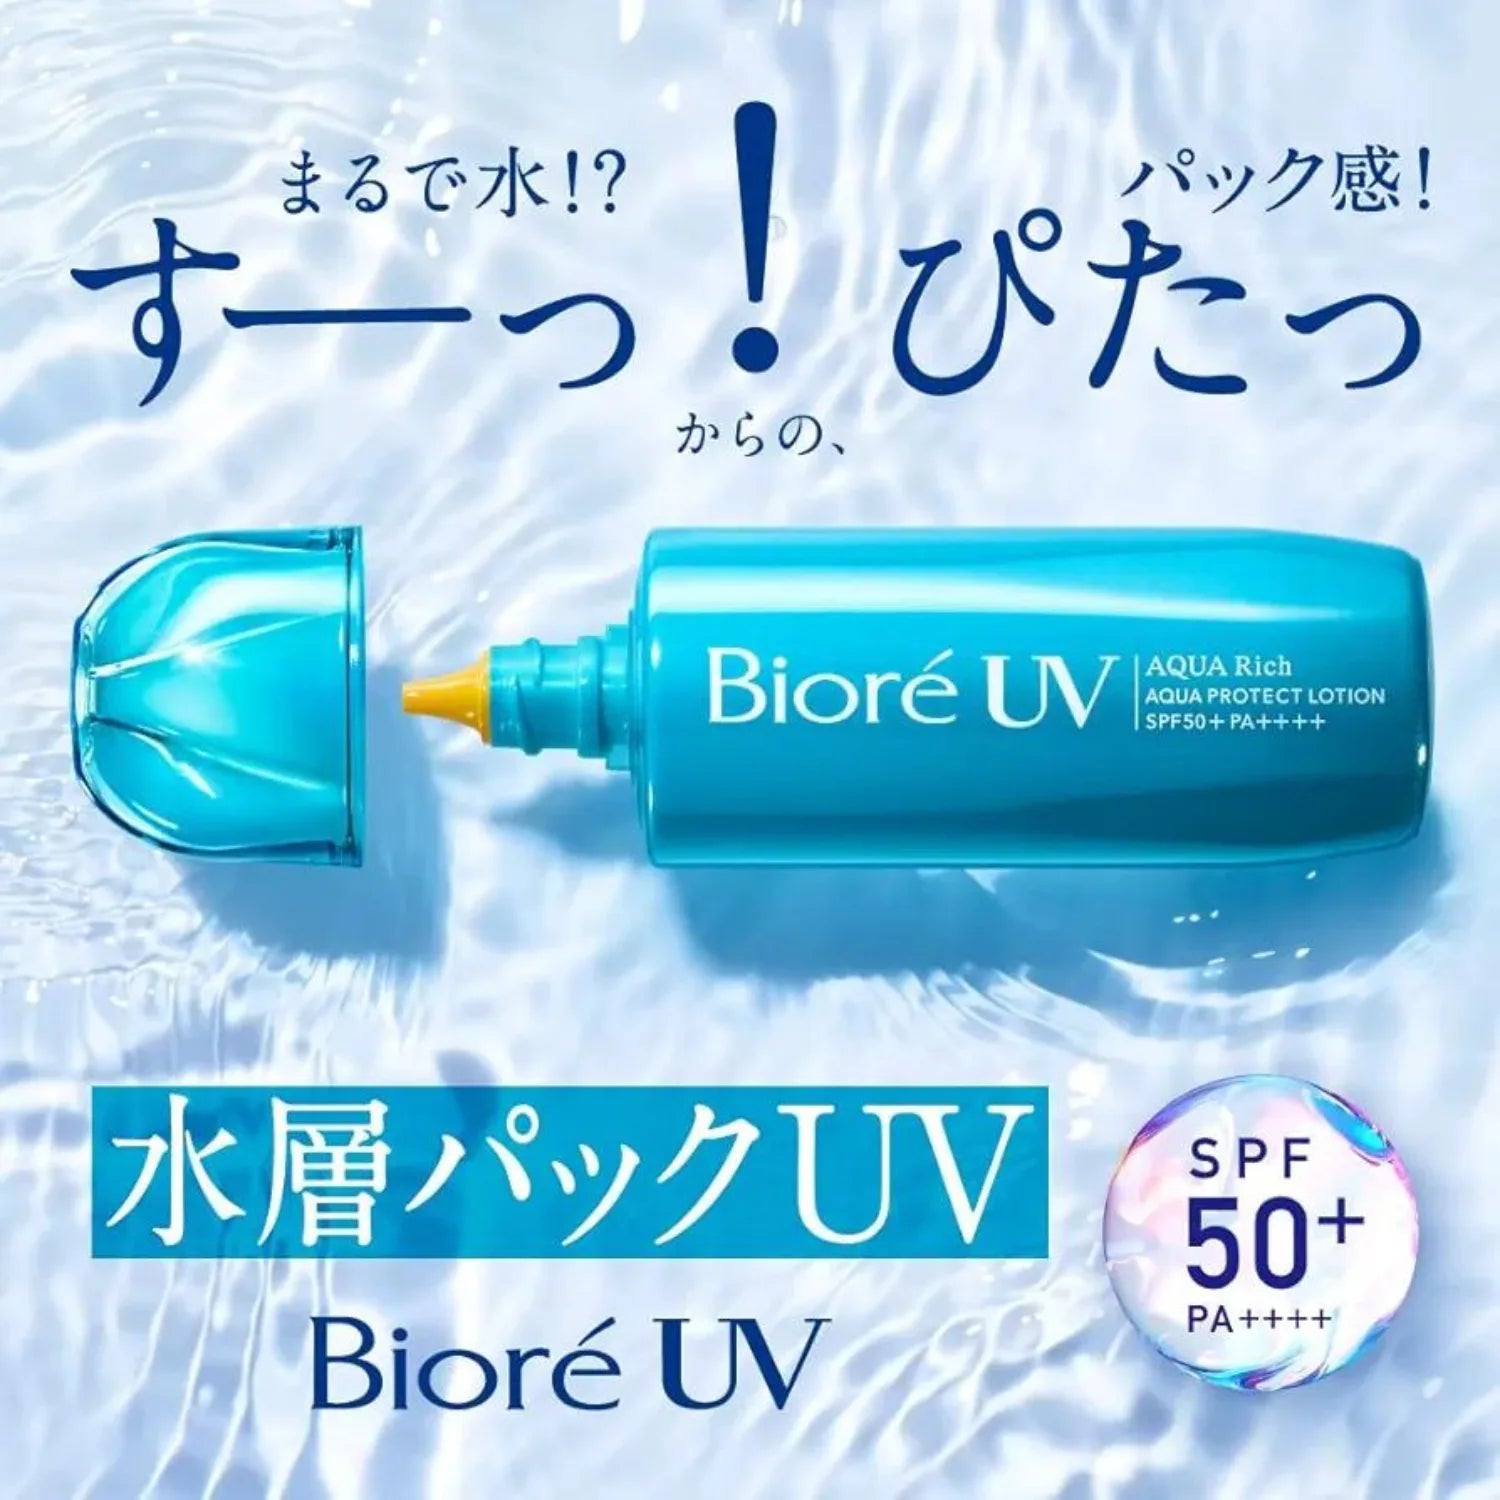 Biore UV Aqua Rich Protect Lotion SPF 50+ PA++++ 70ml